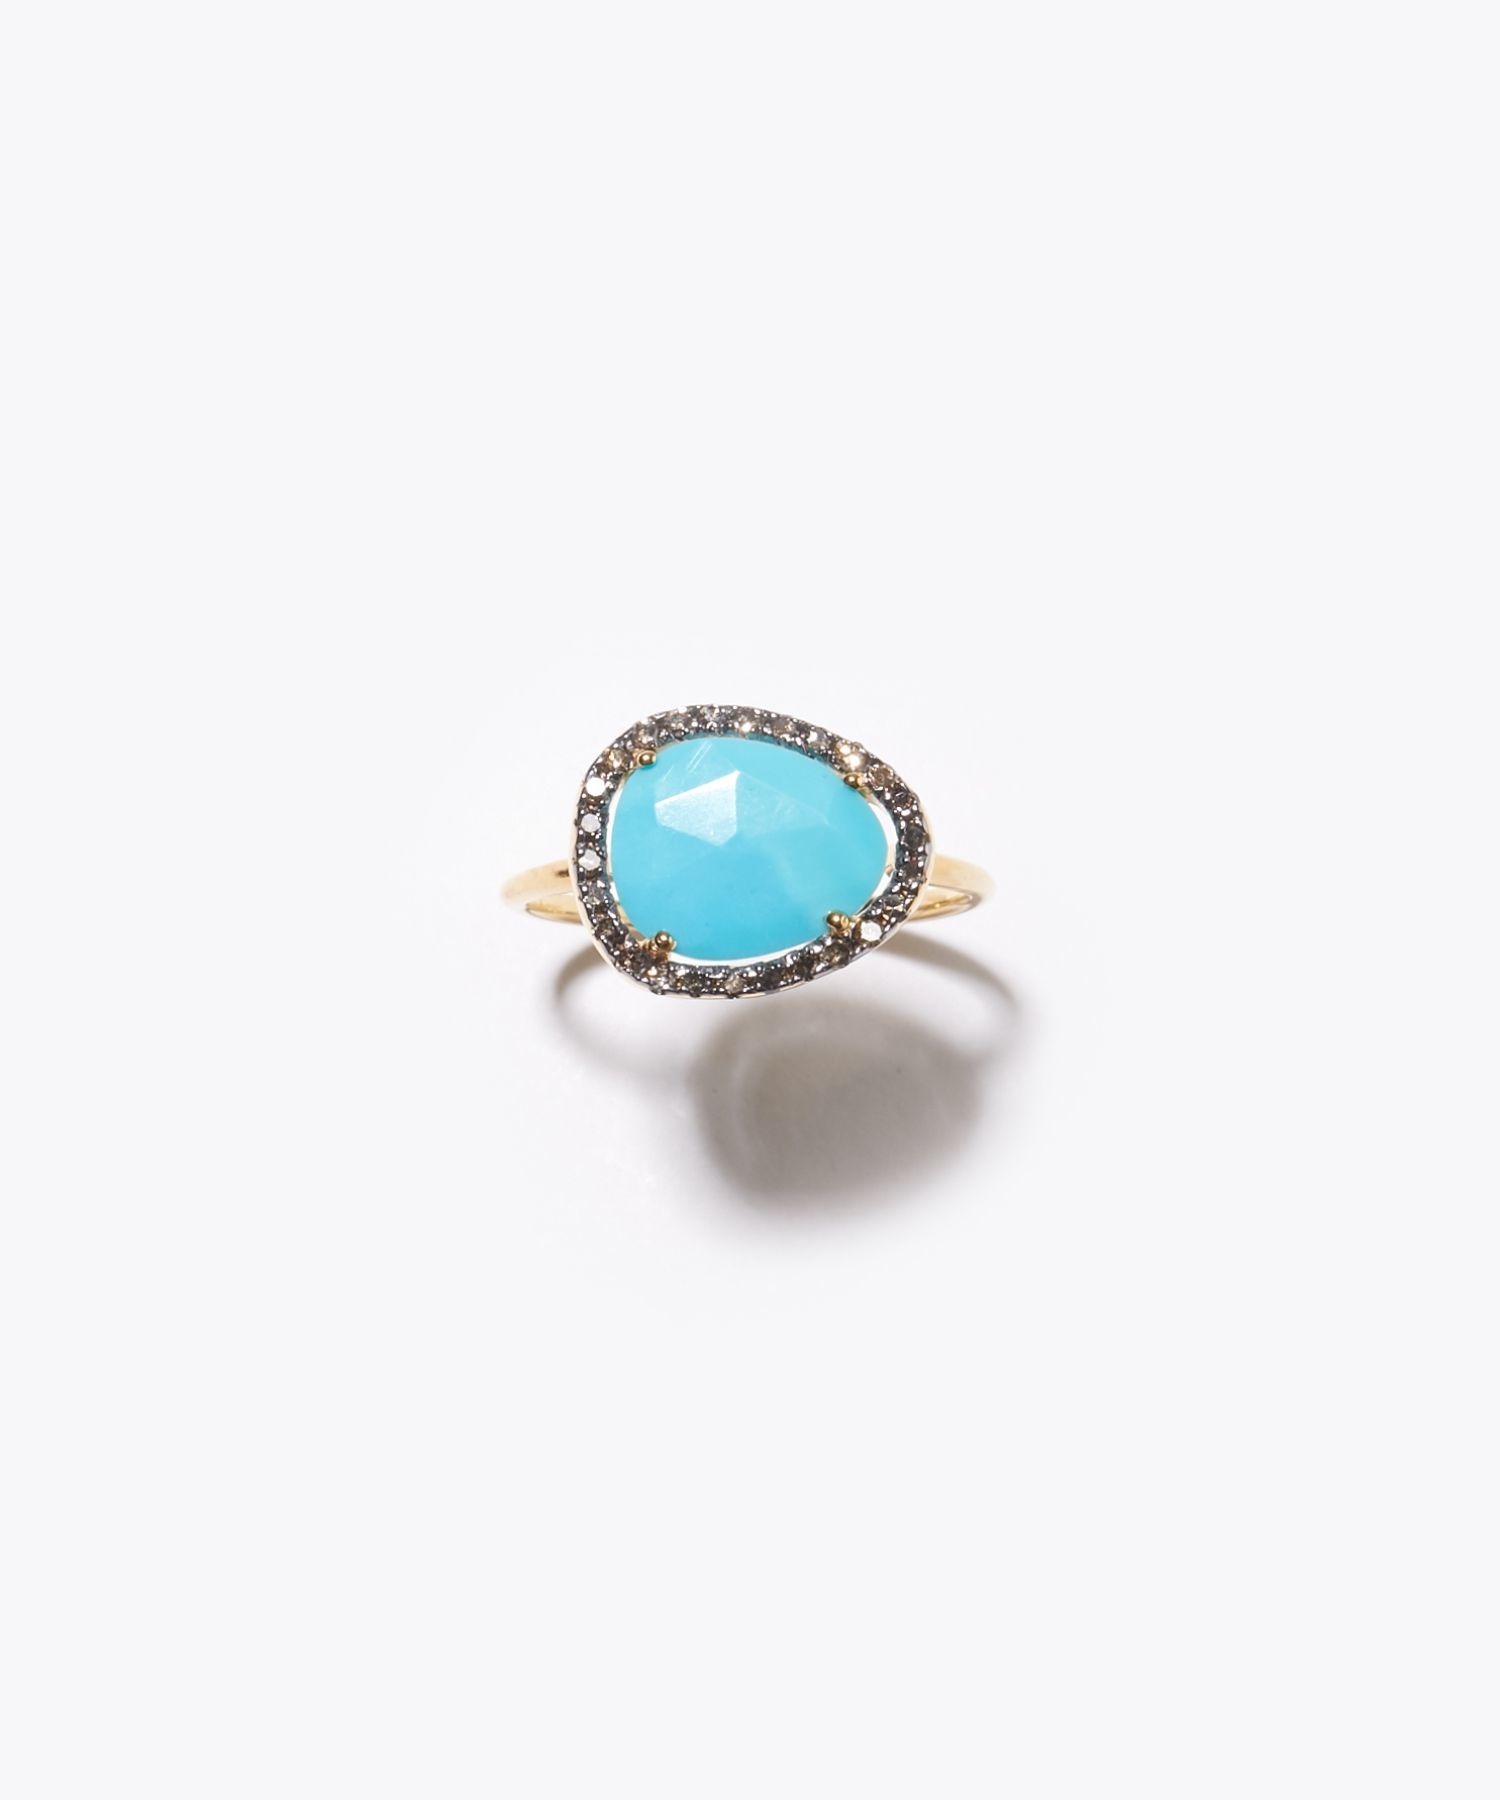 [elafonisi] turquoise pave diamonds ring